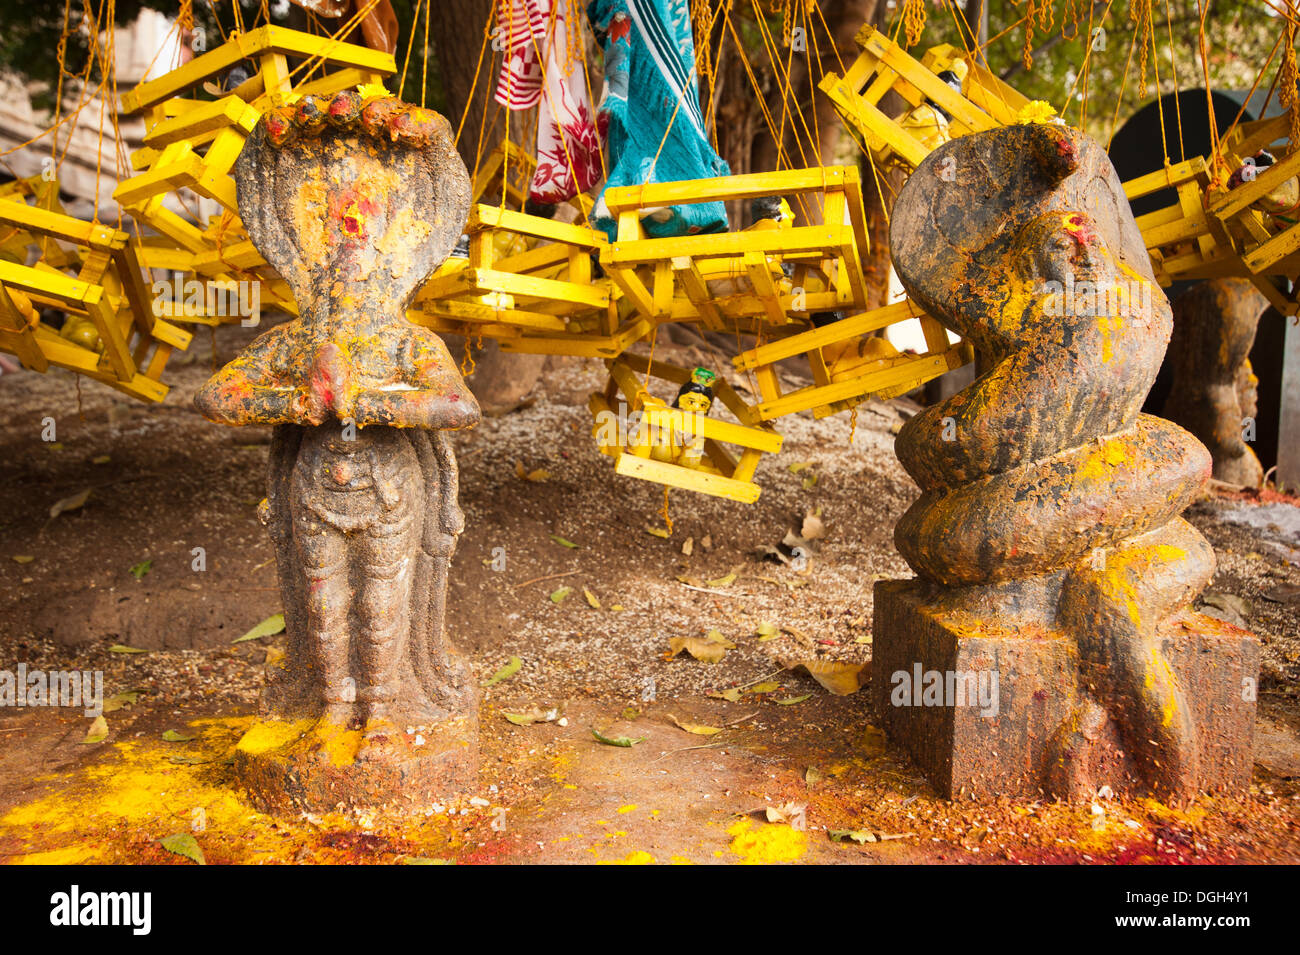 Les idoles de pierre religieux hindous dans le temple d'offrandes. L'Inde du Sud, Tamil Nadu Banque D'Images